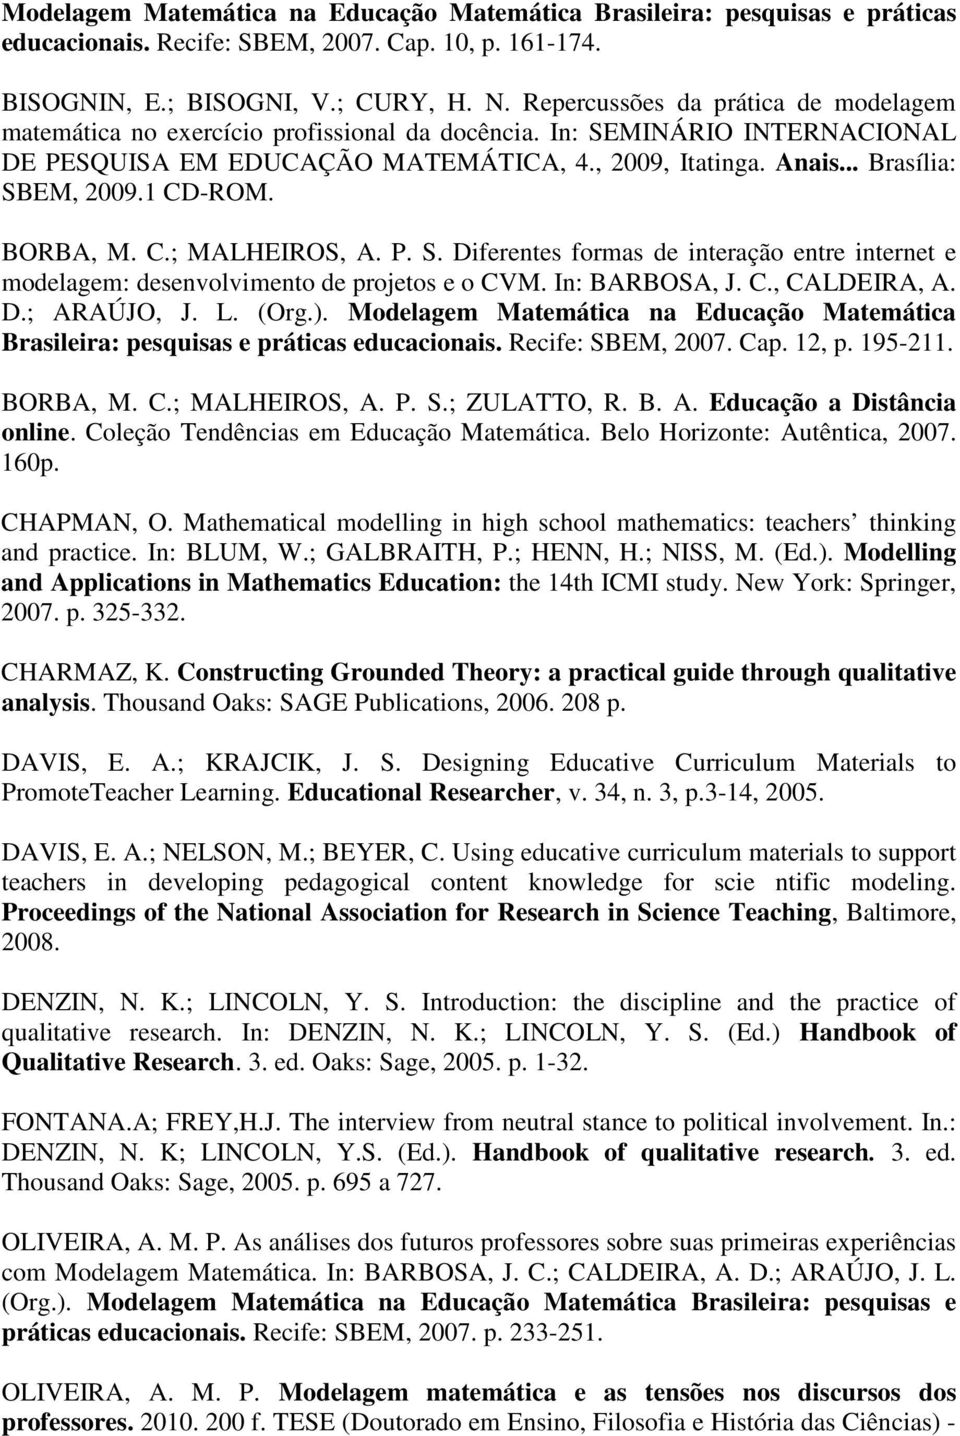 1 CD-ROM. BORBA, M. C.; MALHEIROS, A. P. S. Diferentes formas de interação entre internet e modelagem: desenvolvimento de projetos e o CVM. In: BARBOSA, J. C., CALDEIRA, A. D.; ARAÚJO, J. L. (Org.).